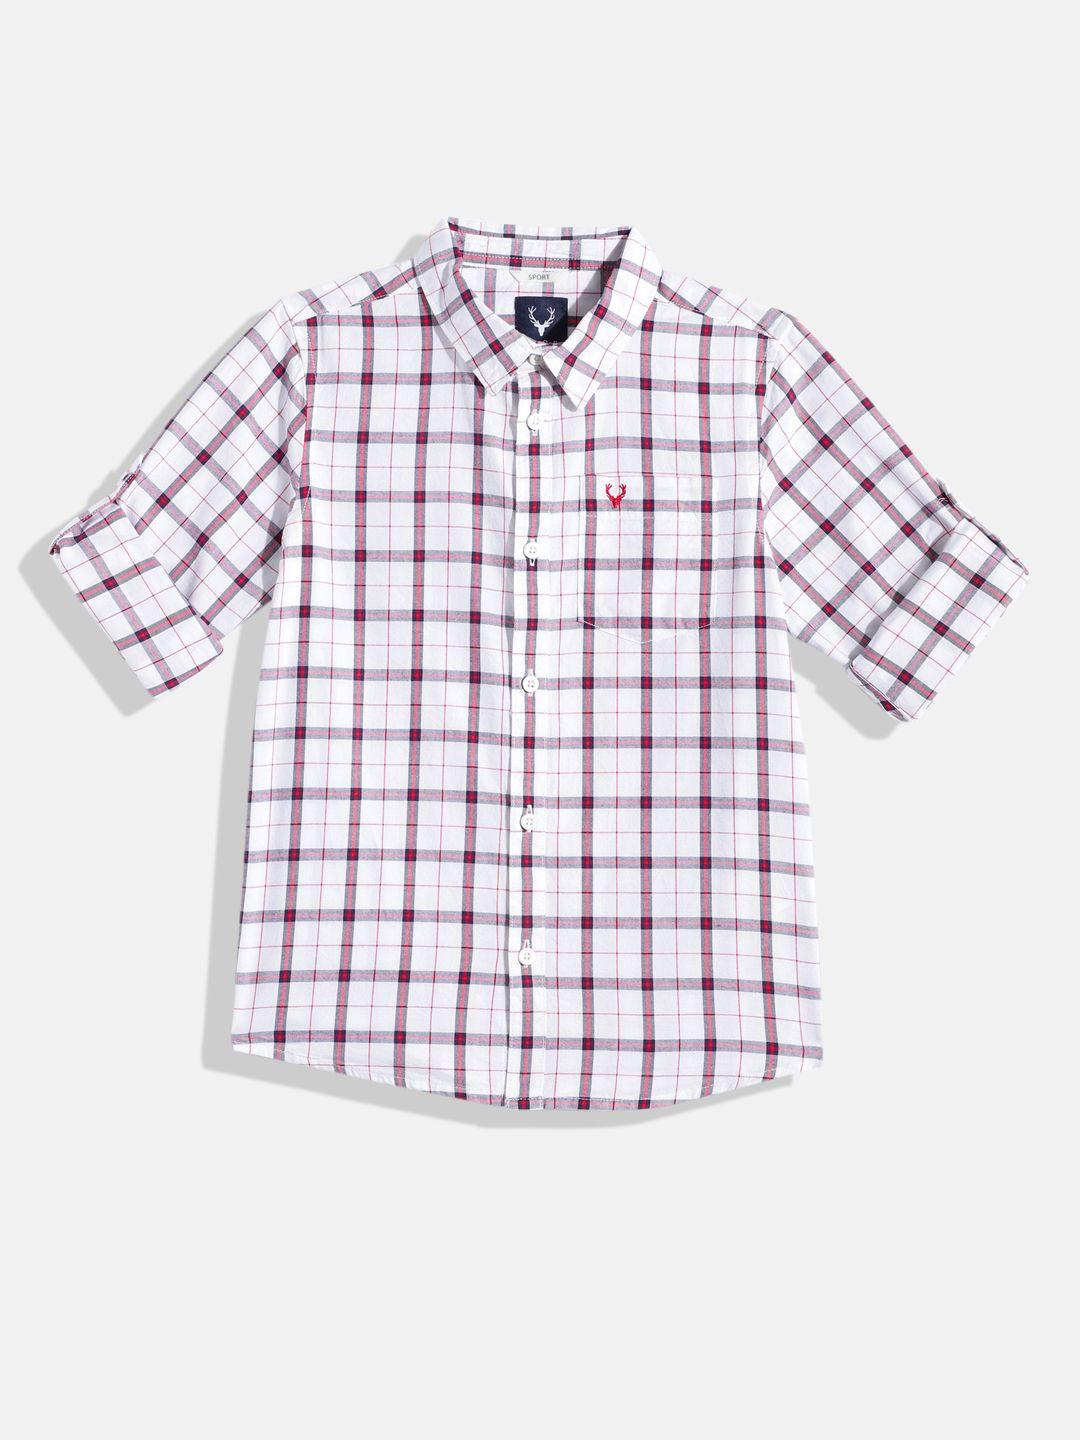 allen solly junior boys sport tartan checks opaque pure cotton casual shirt